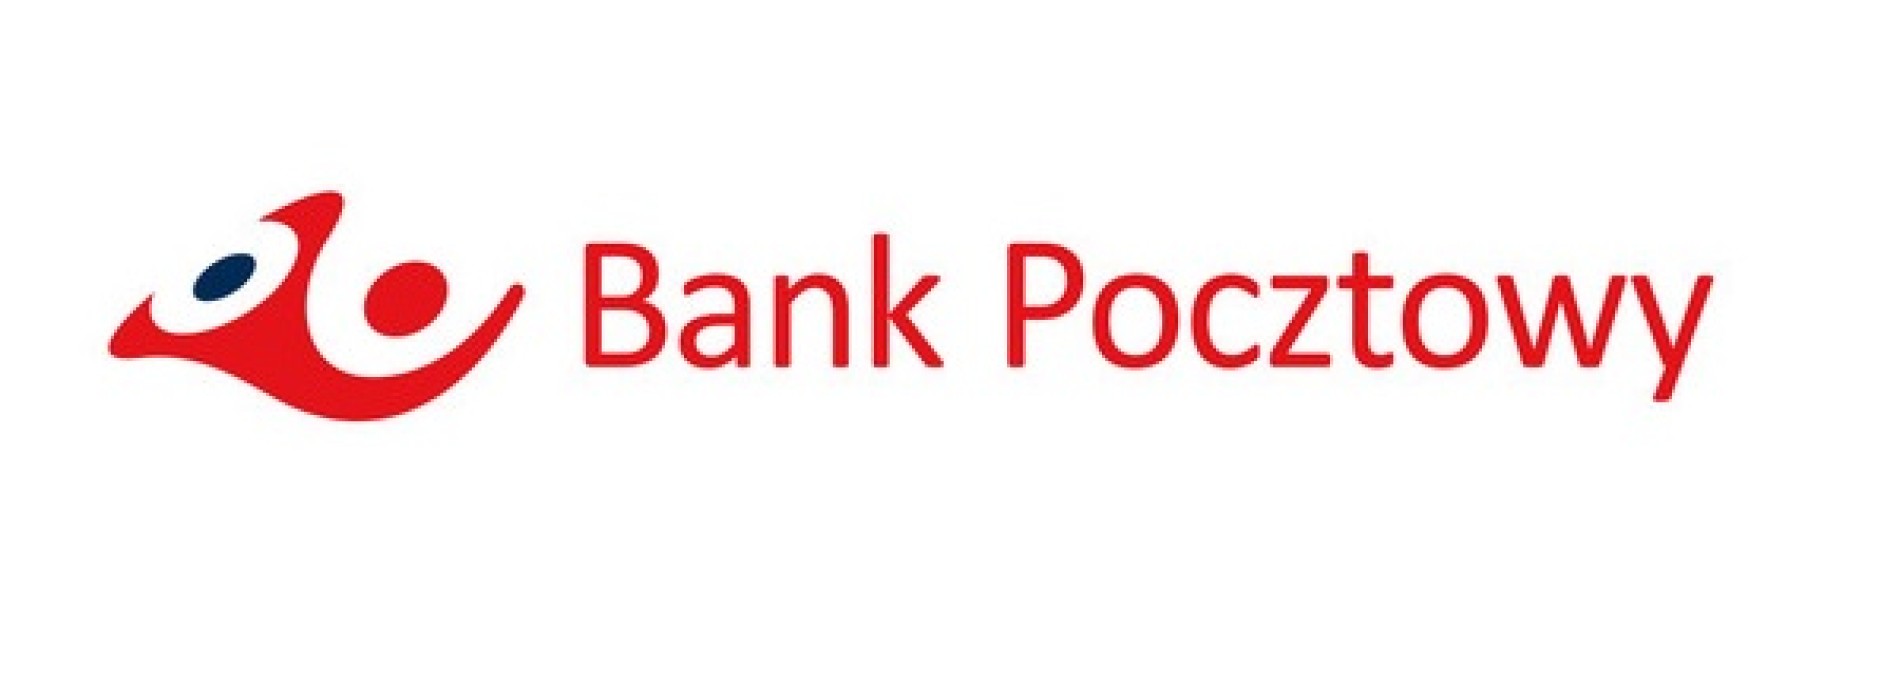 Dobre wyniki Banku Pocztowego po III kwartałach 2014 r.